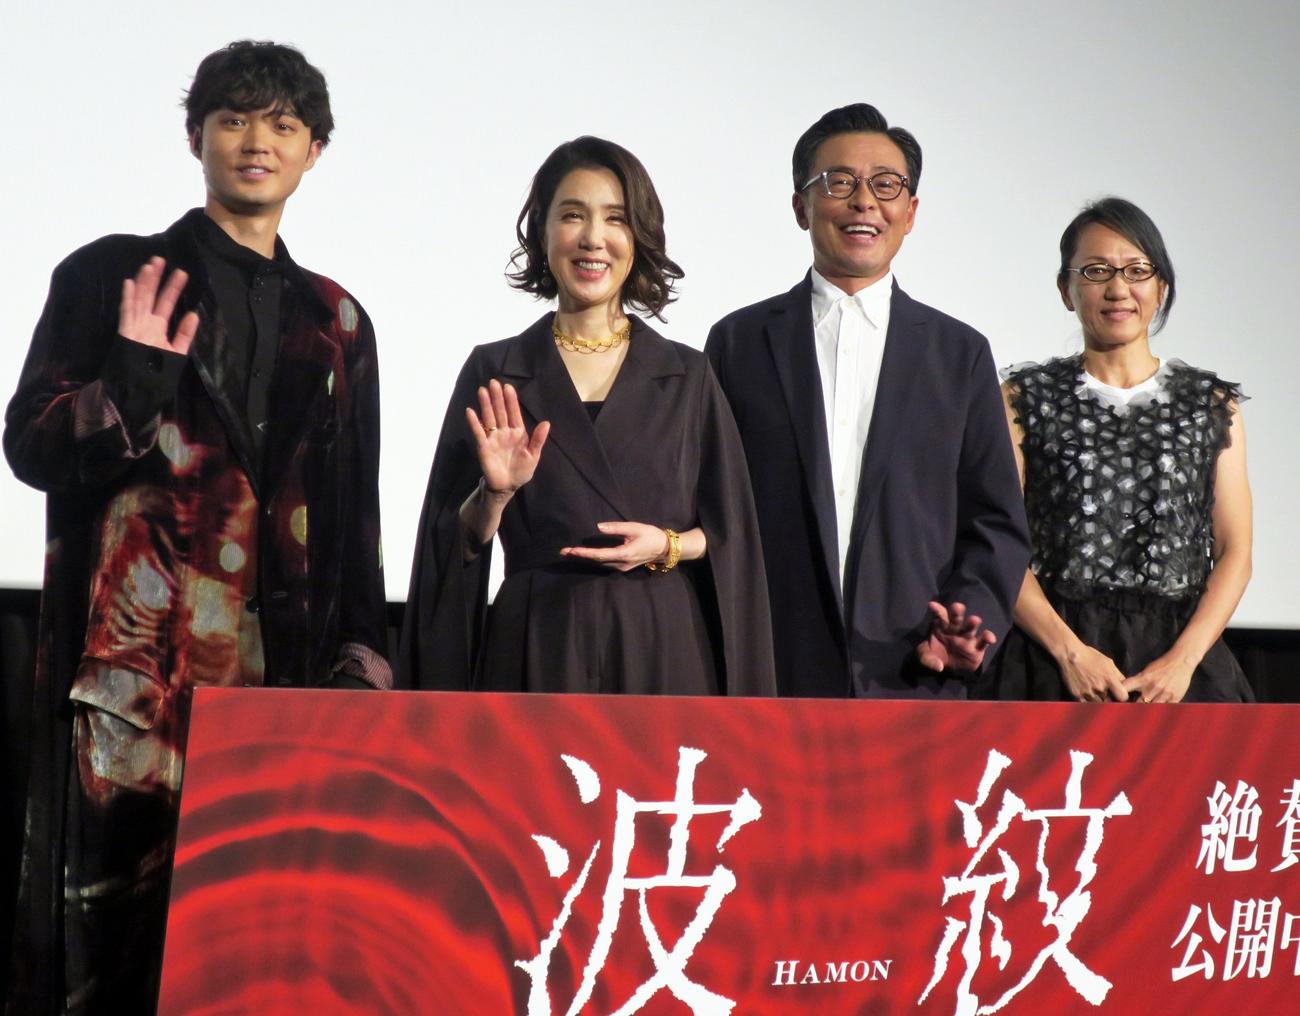 映画「波紋」初日舞台あいさつで登壇する、左から磯村勇斗、筒井真理子、光石研、荻上直子監督